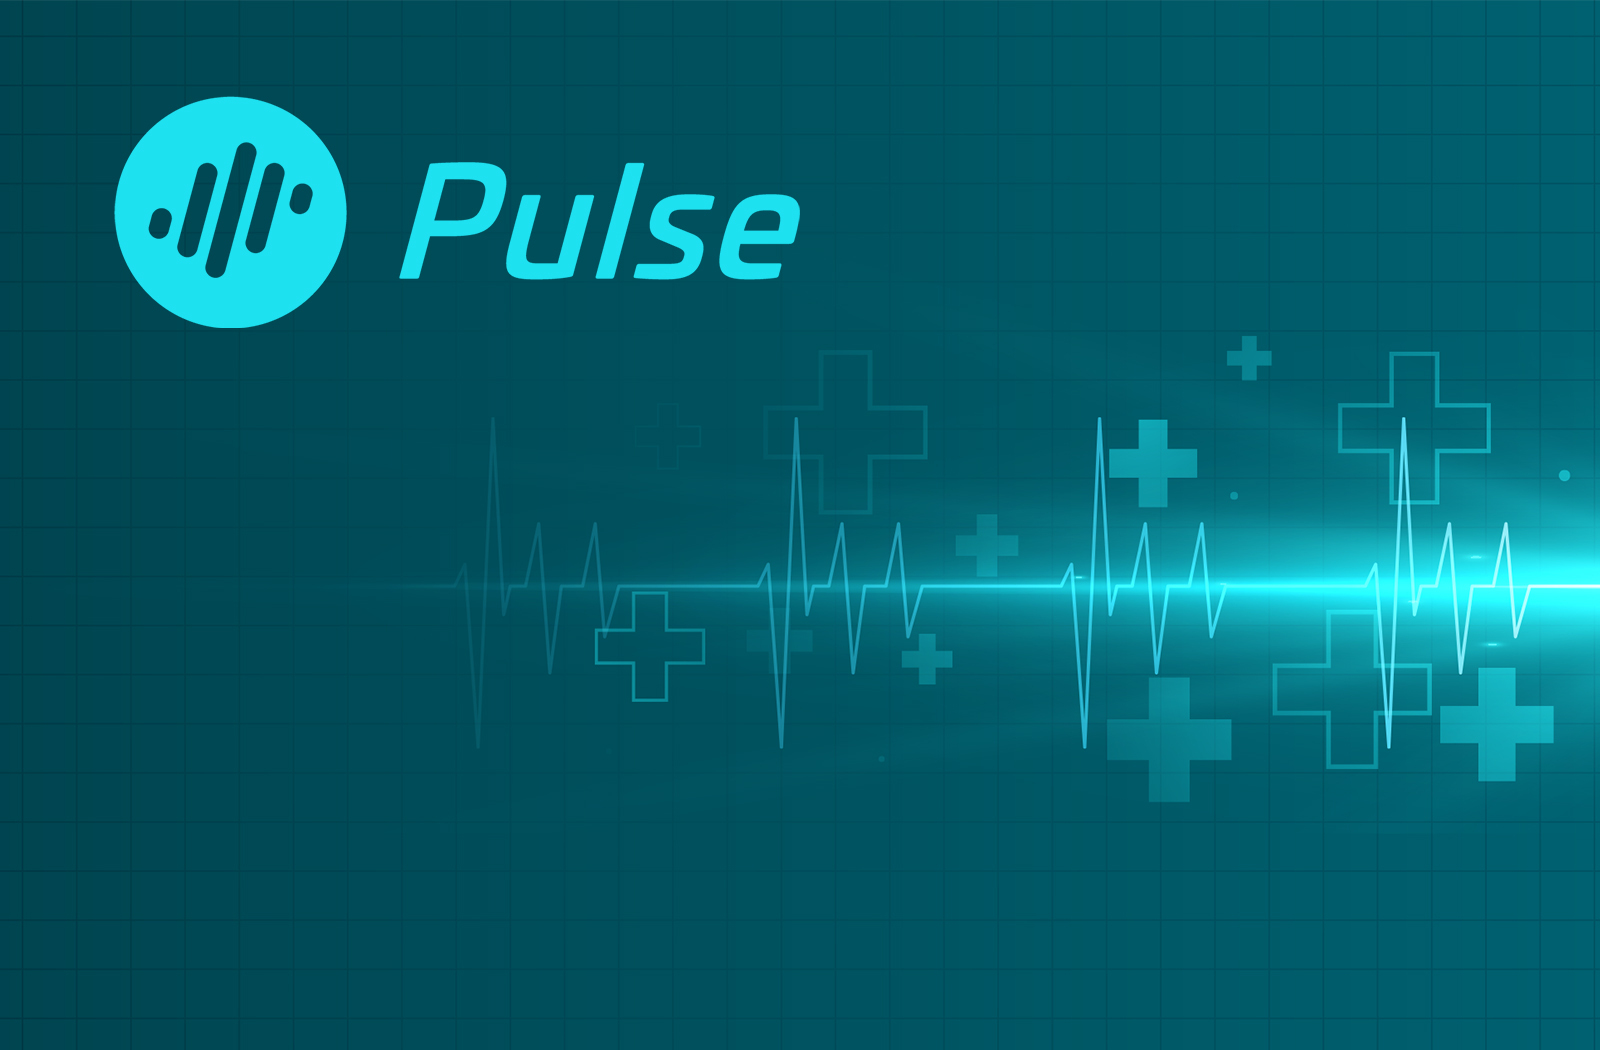 NullTX Pulse AI Blockchain